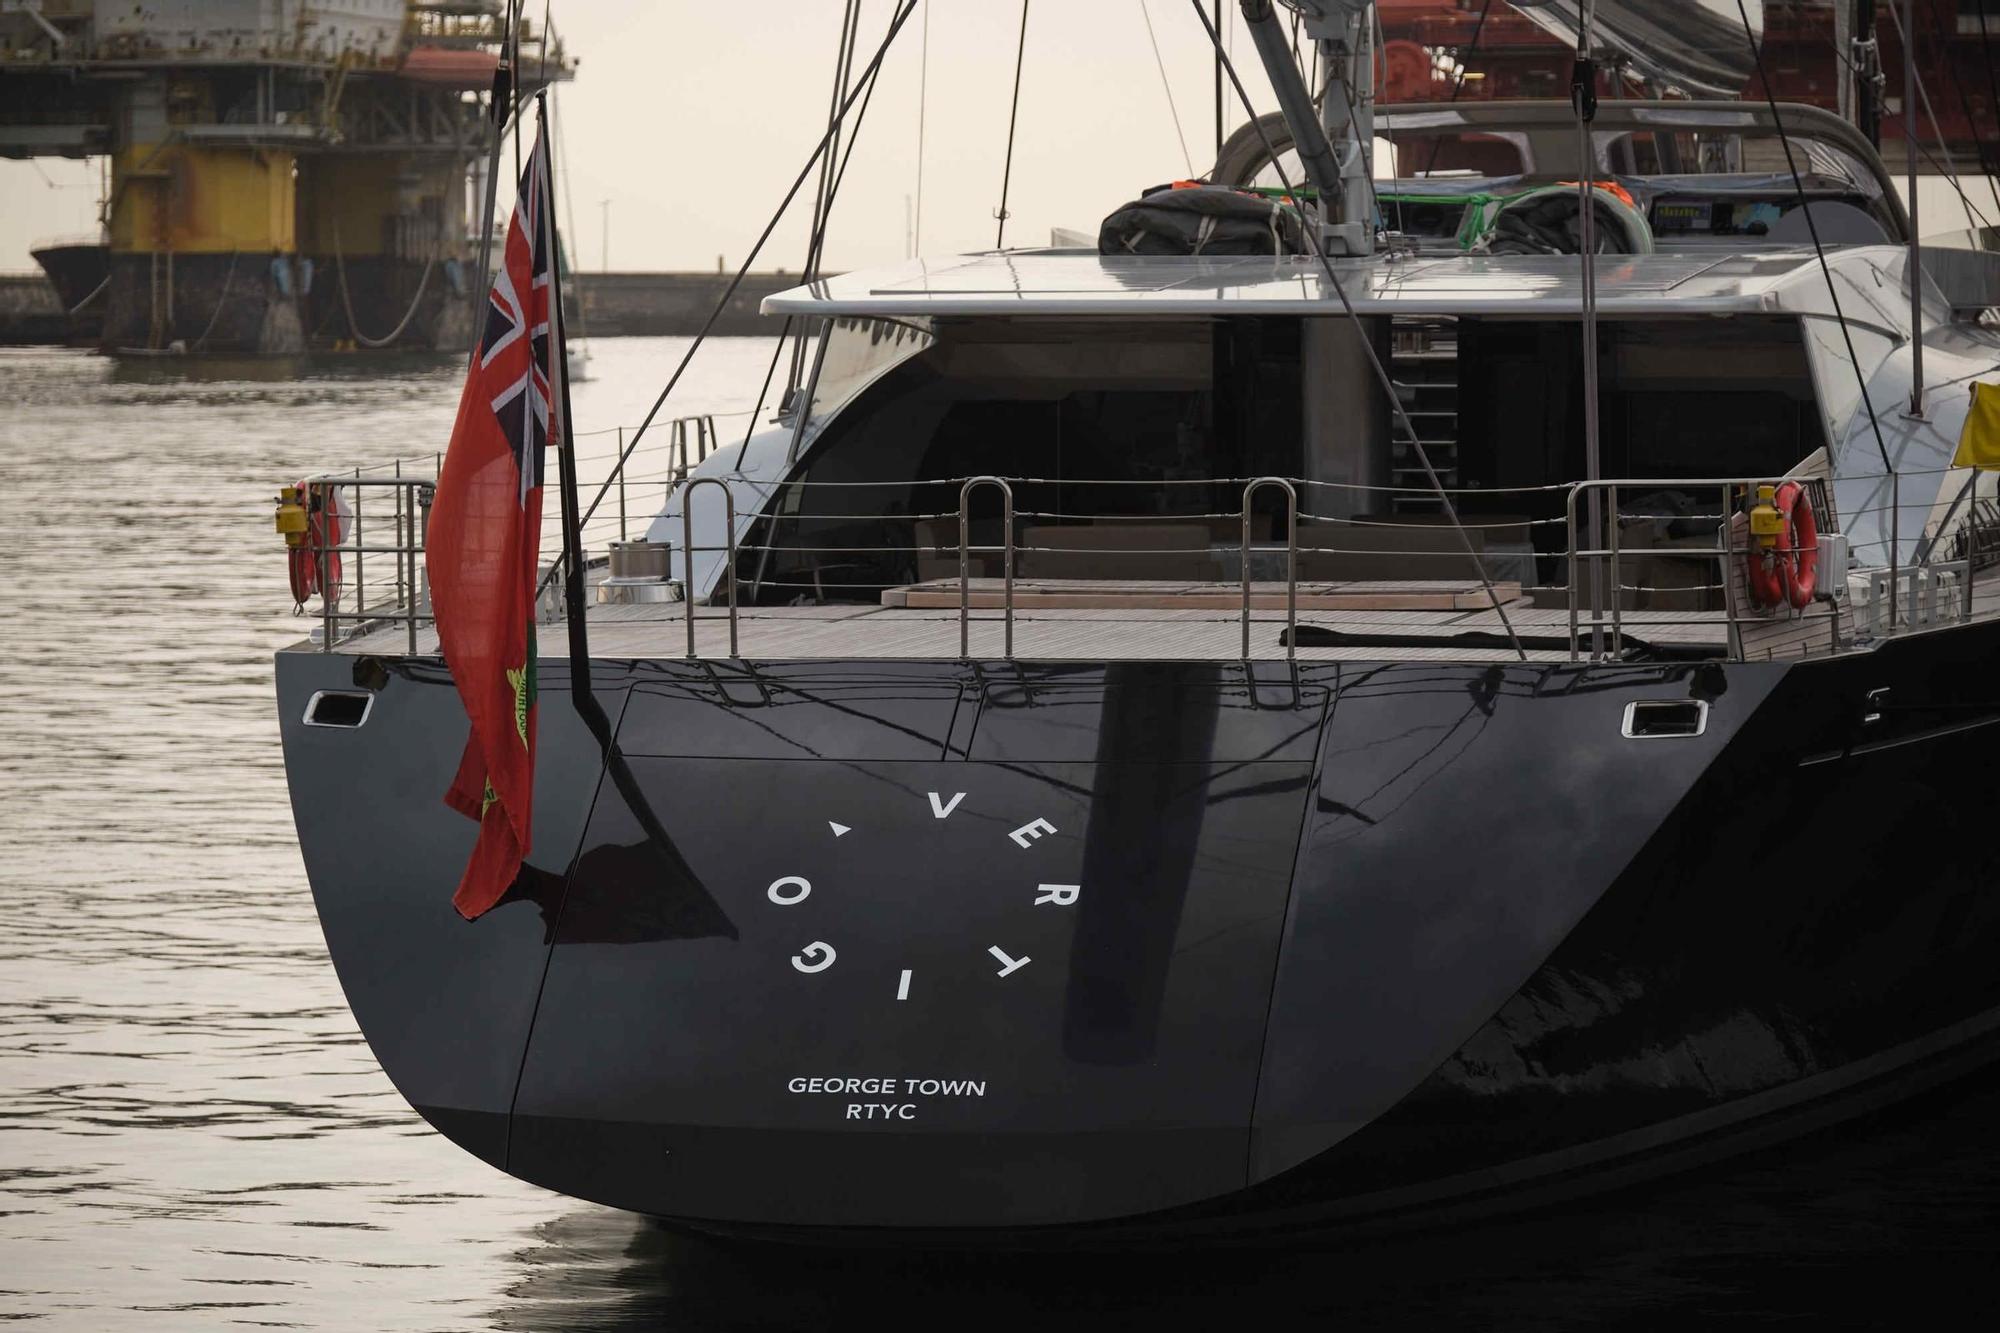 Fotos del velero 'Vértigo', uno de los más lujosos del mundo